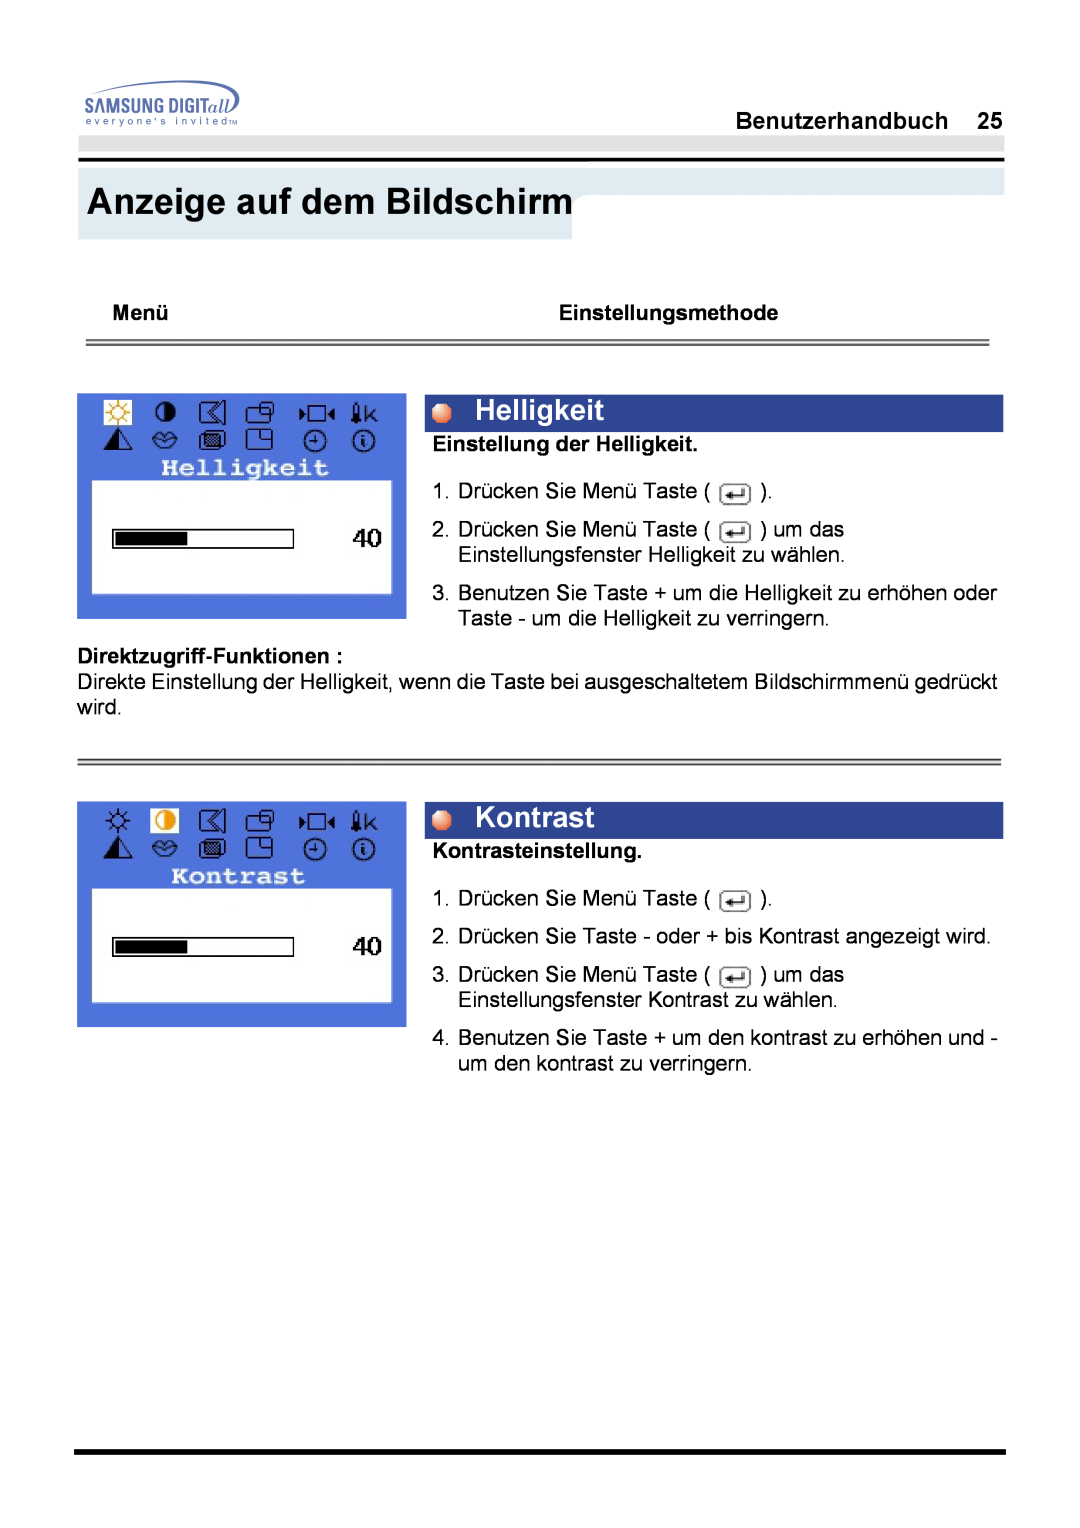 Samsung GH17LSSNJ/EDC manual Helligkeit, Kontrast, Anzeige auf dem Bildschirm, Benutzerhandbuch, Menü, Einstellungsmethode 